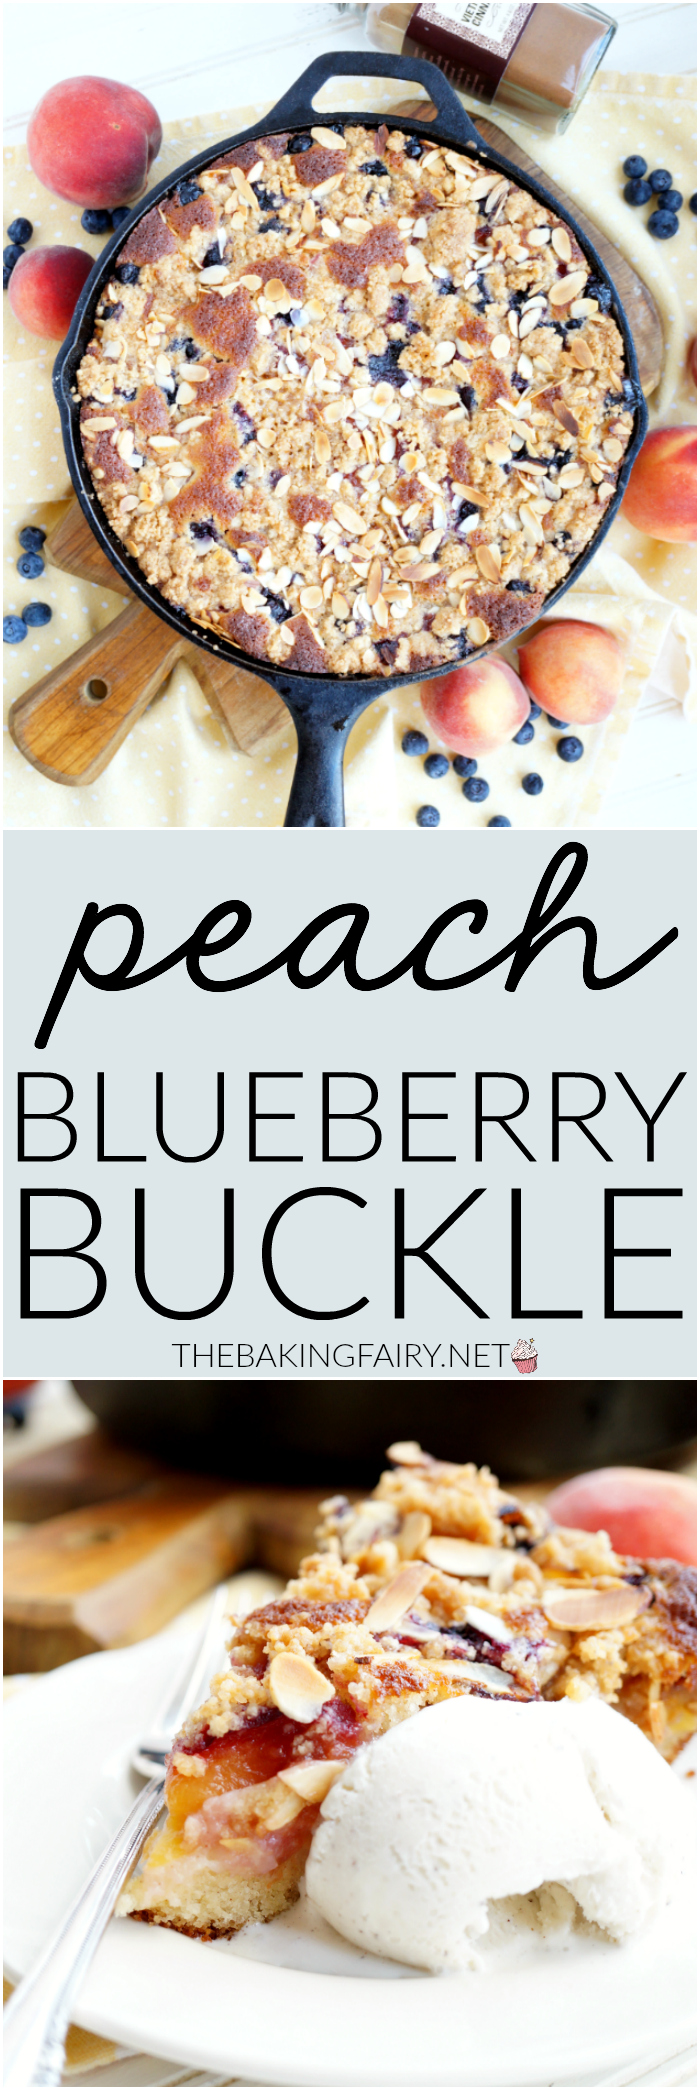 peach blueberry buckle | The Baking Fairy